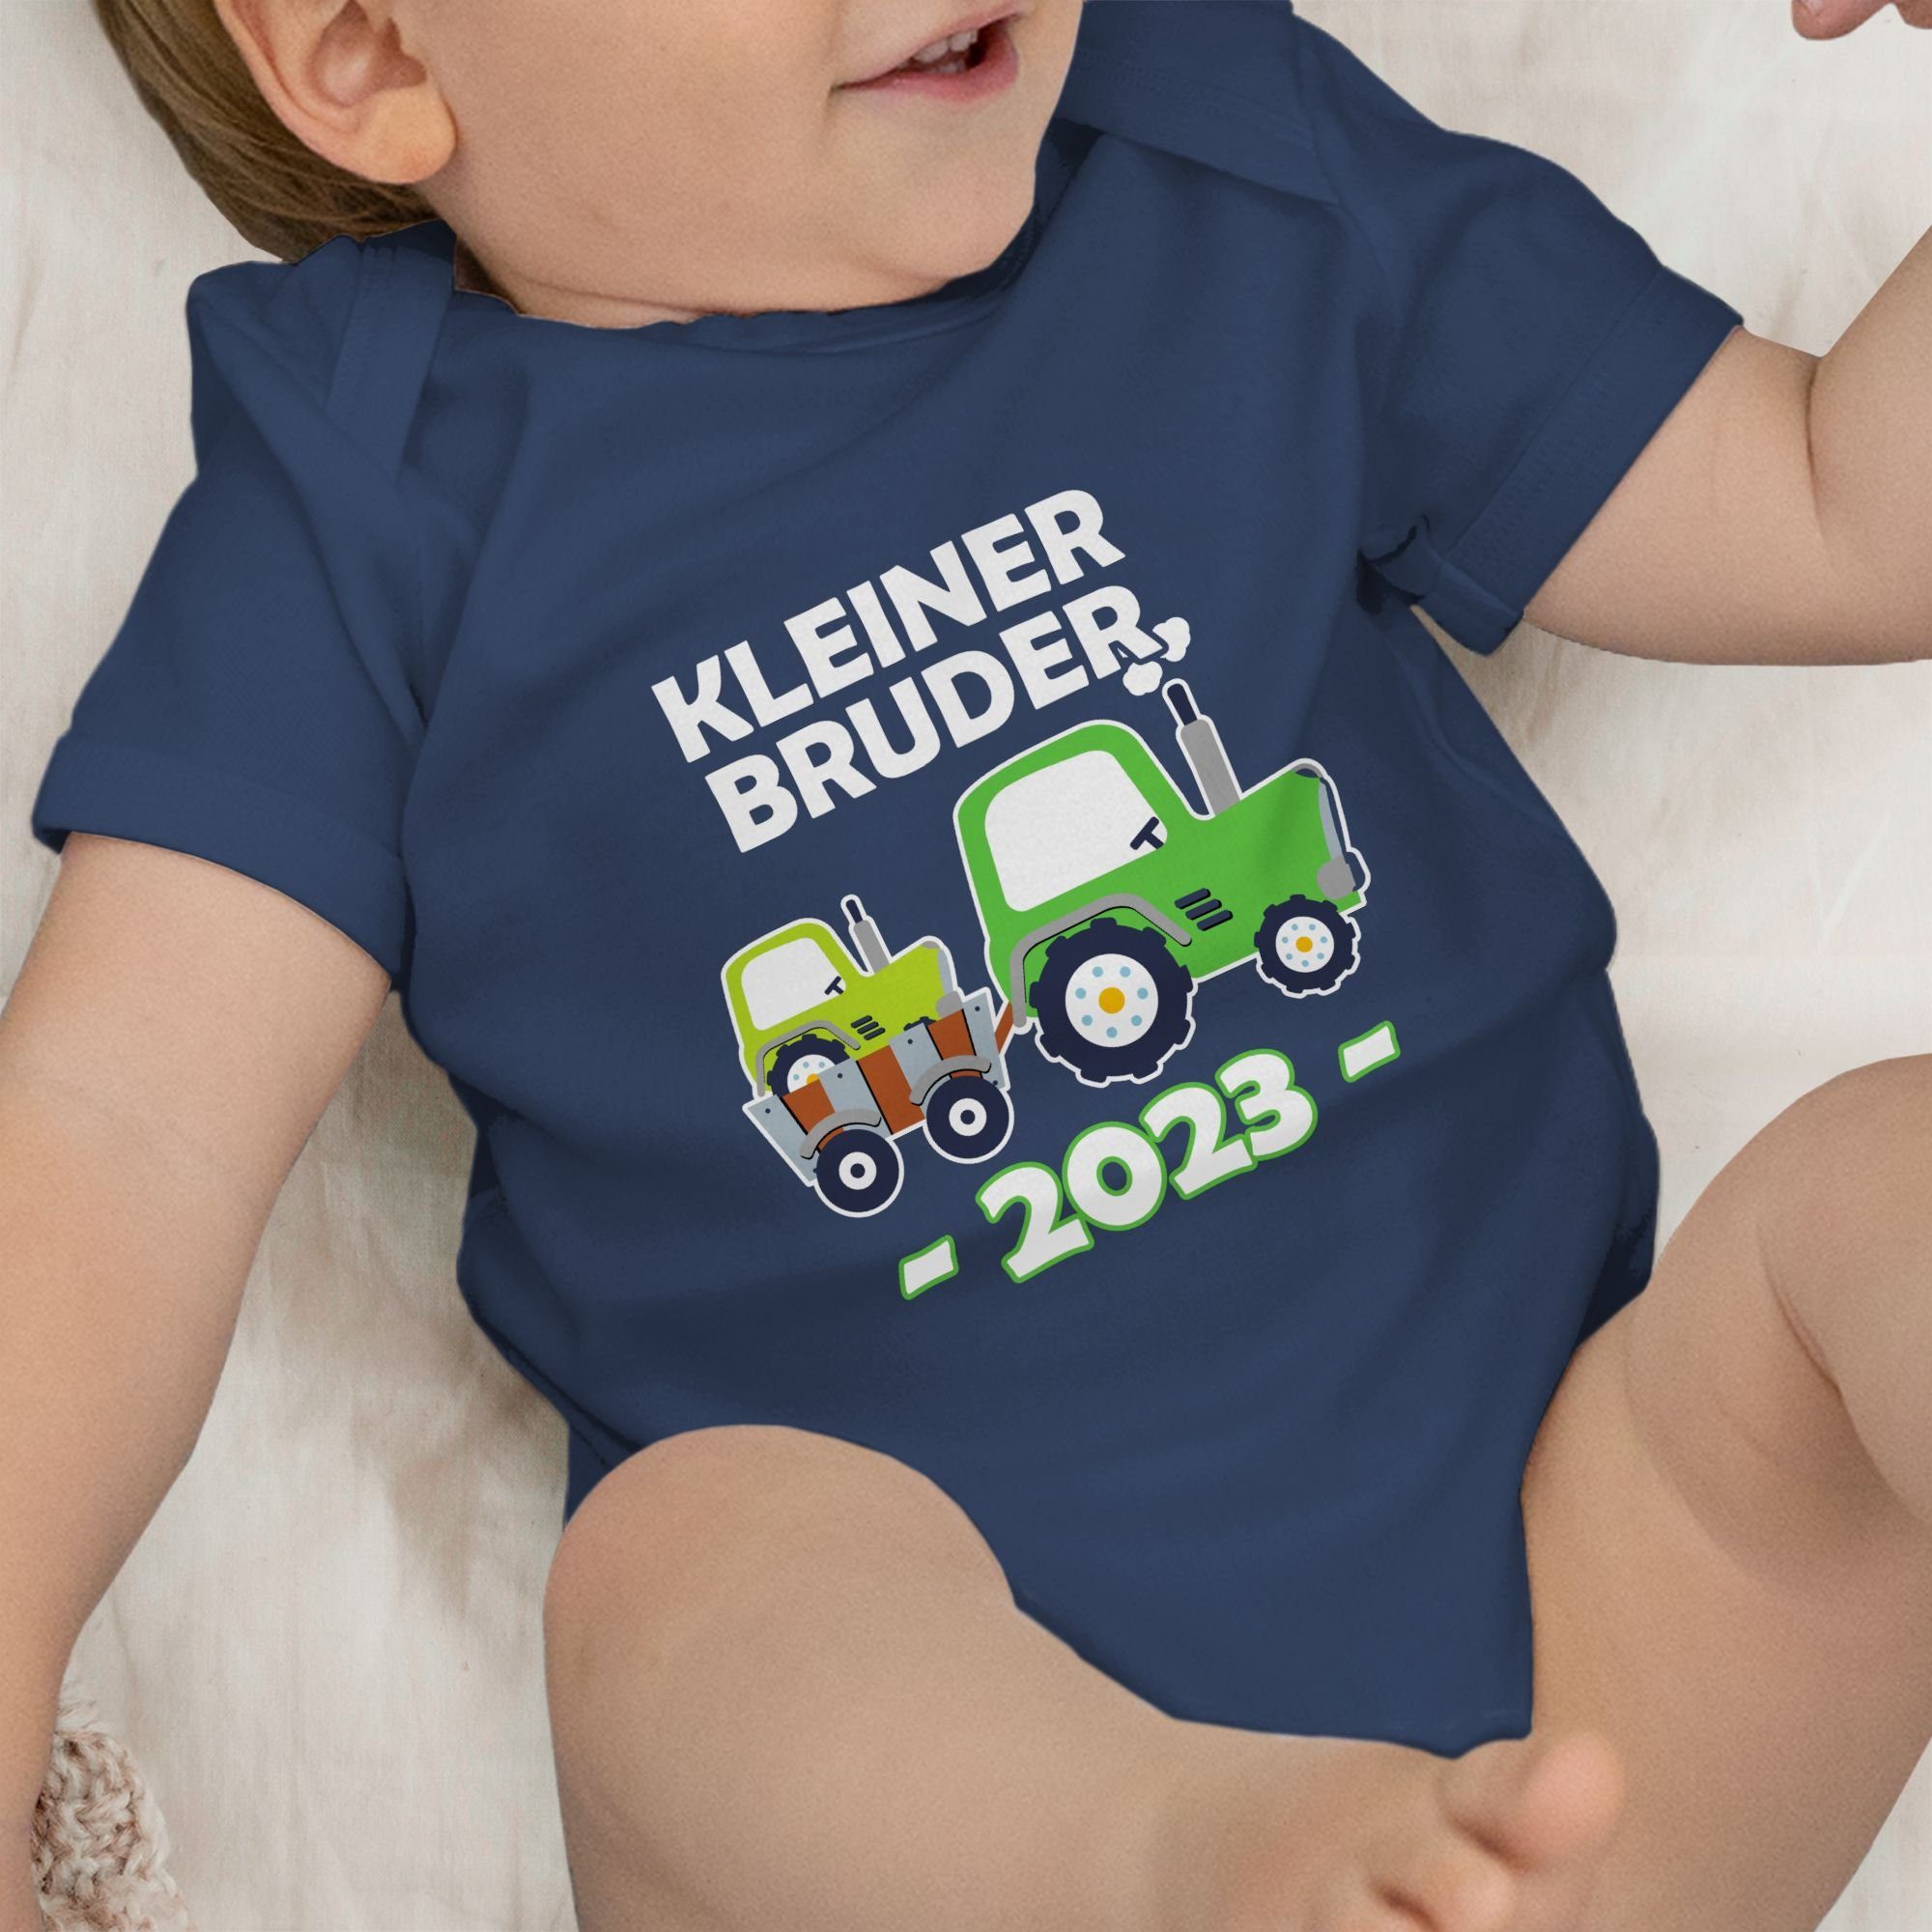 1 Bruder Bruder Kleiner Shirtracer Traktor Blau 2023 Navy Shirtbody Kleiner